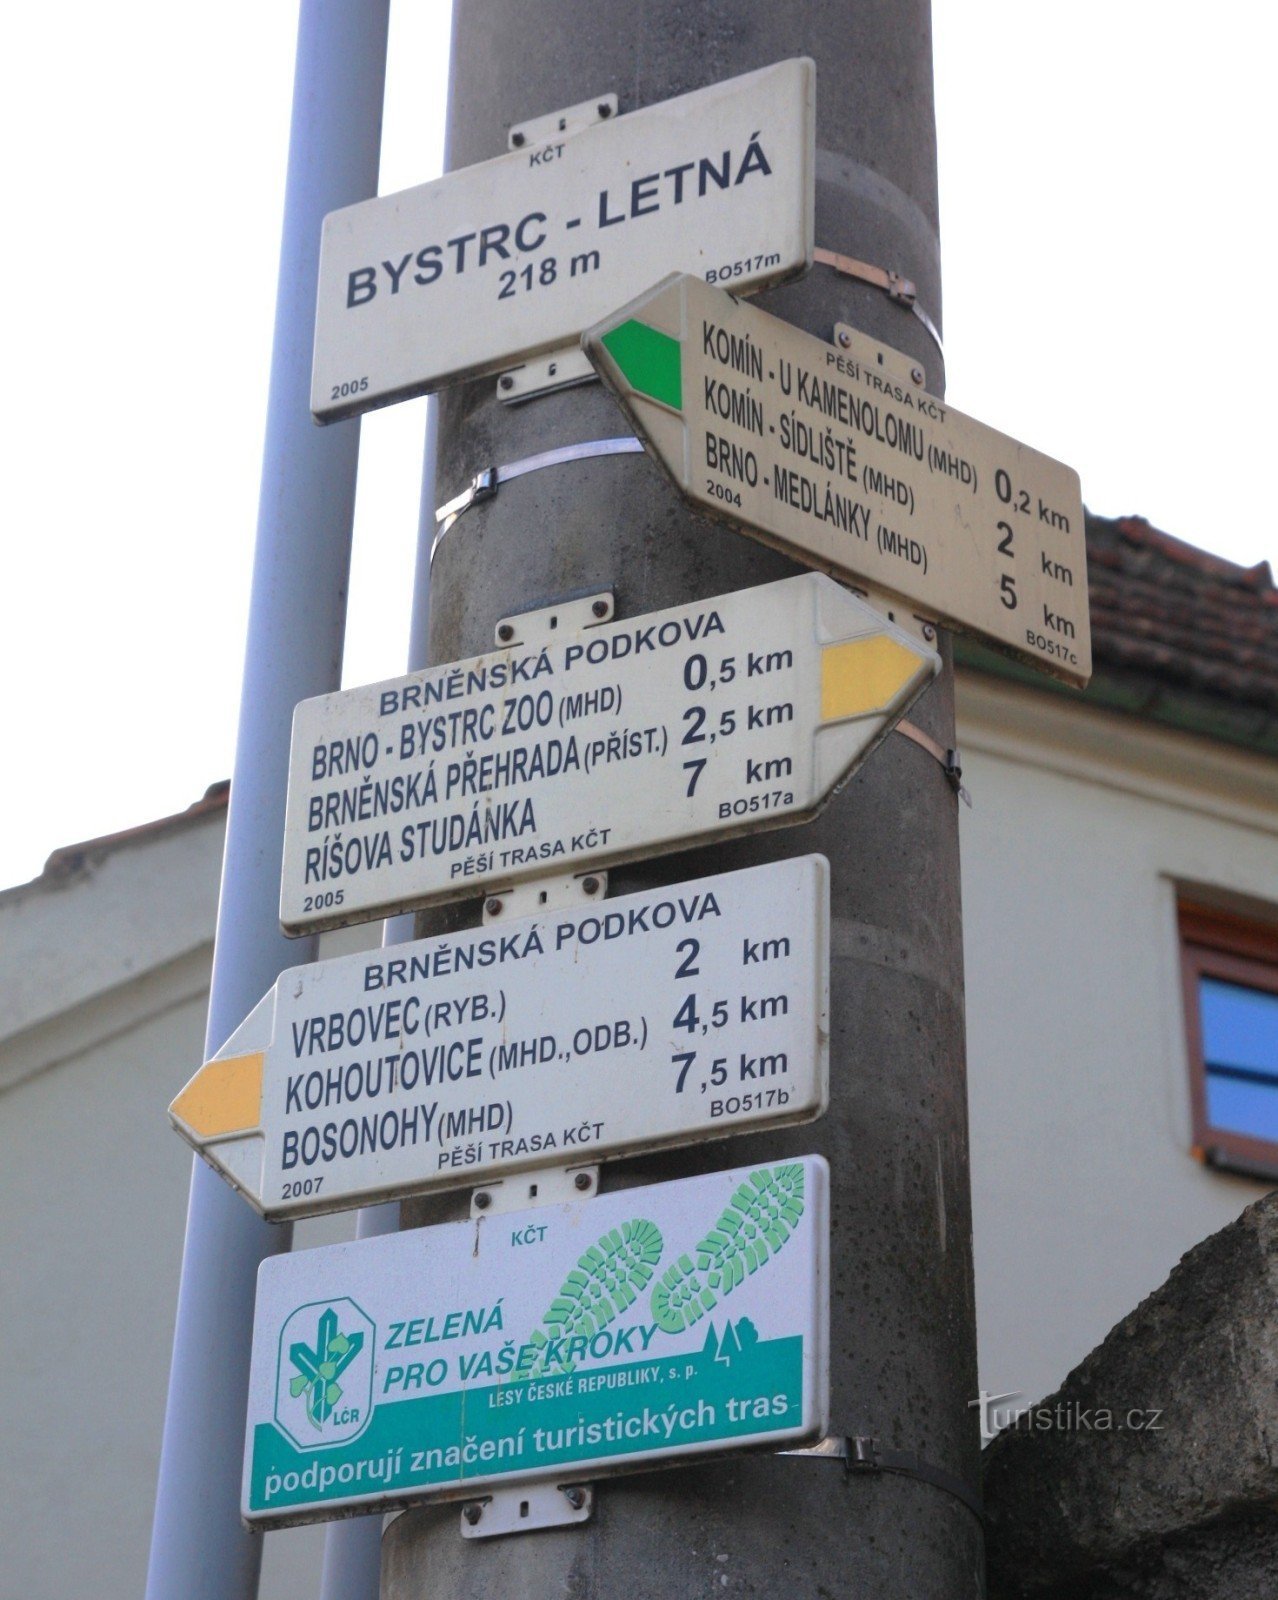 Turističko raskrižje Bystrc-Letná